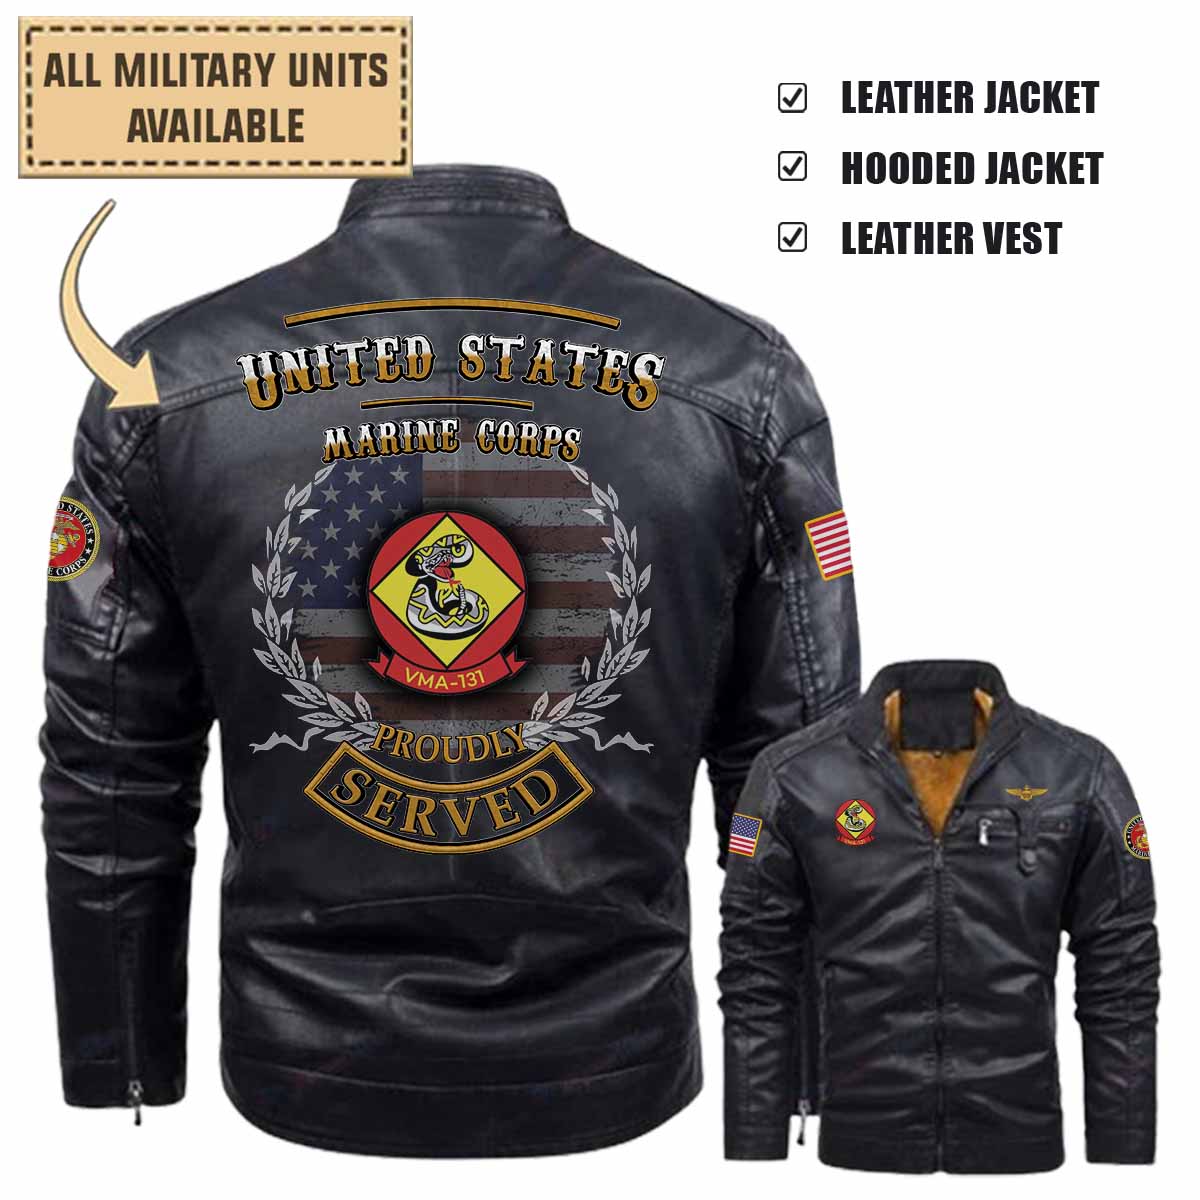 vma 131 diamondbacksleather jacket and vest 04z45